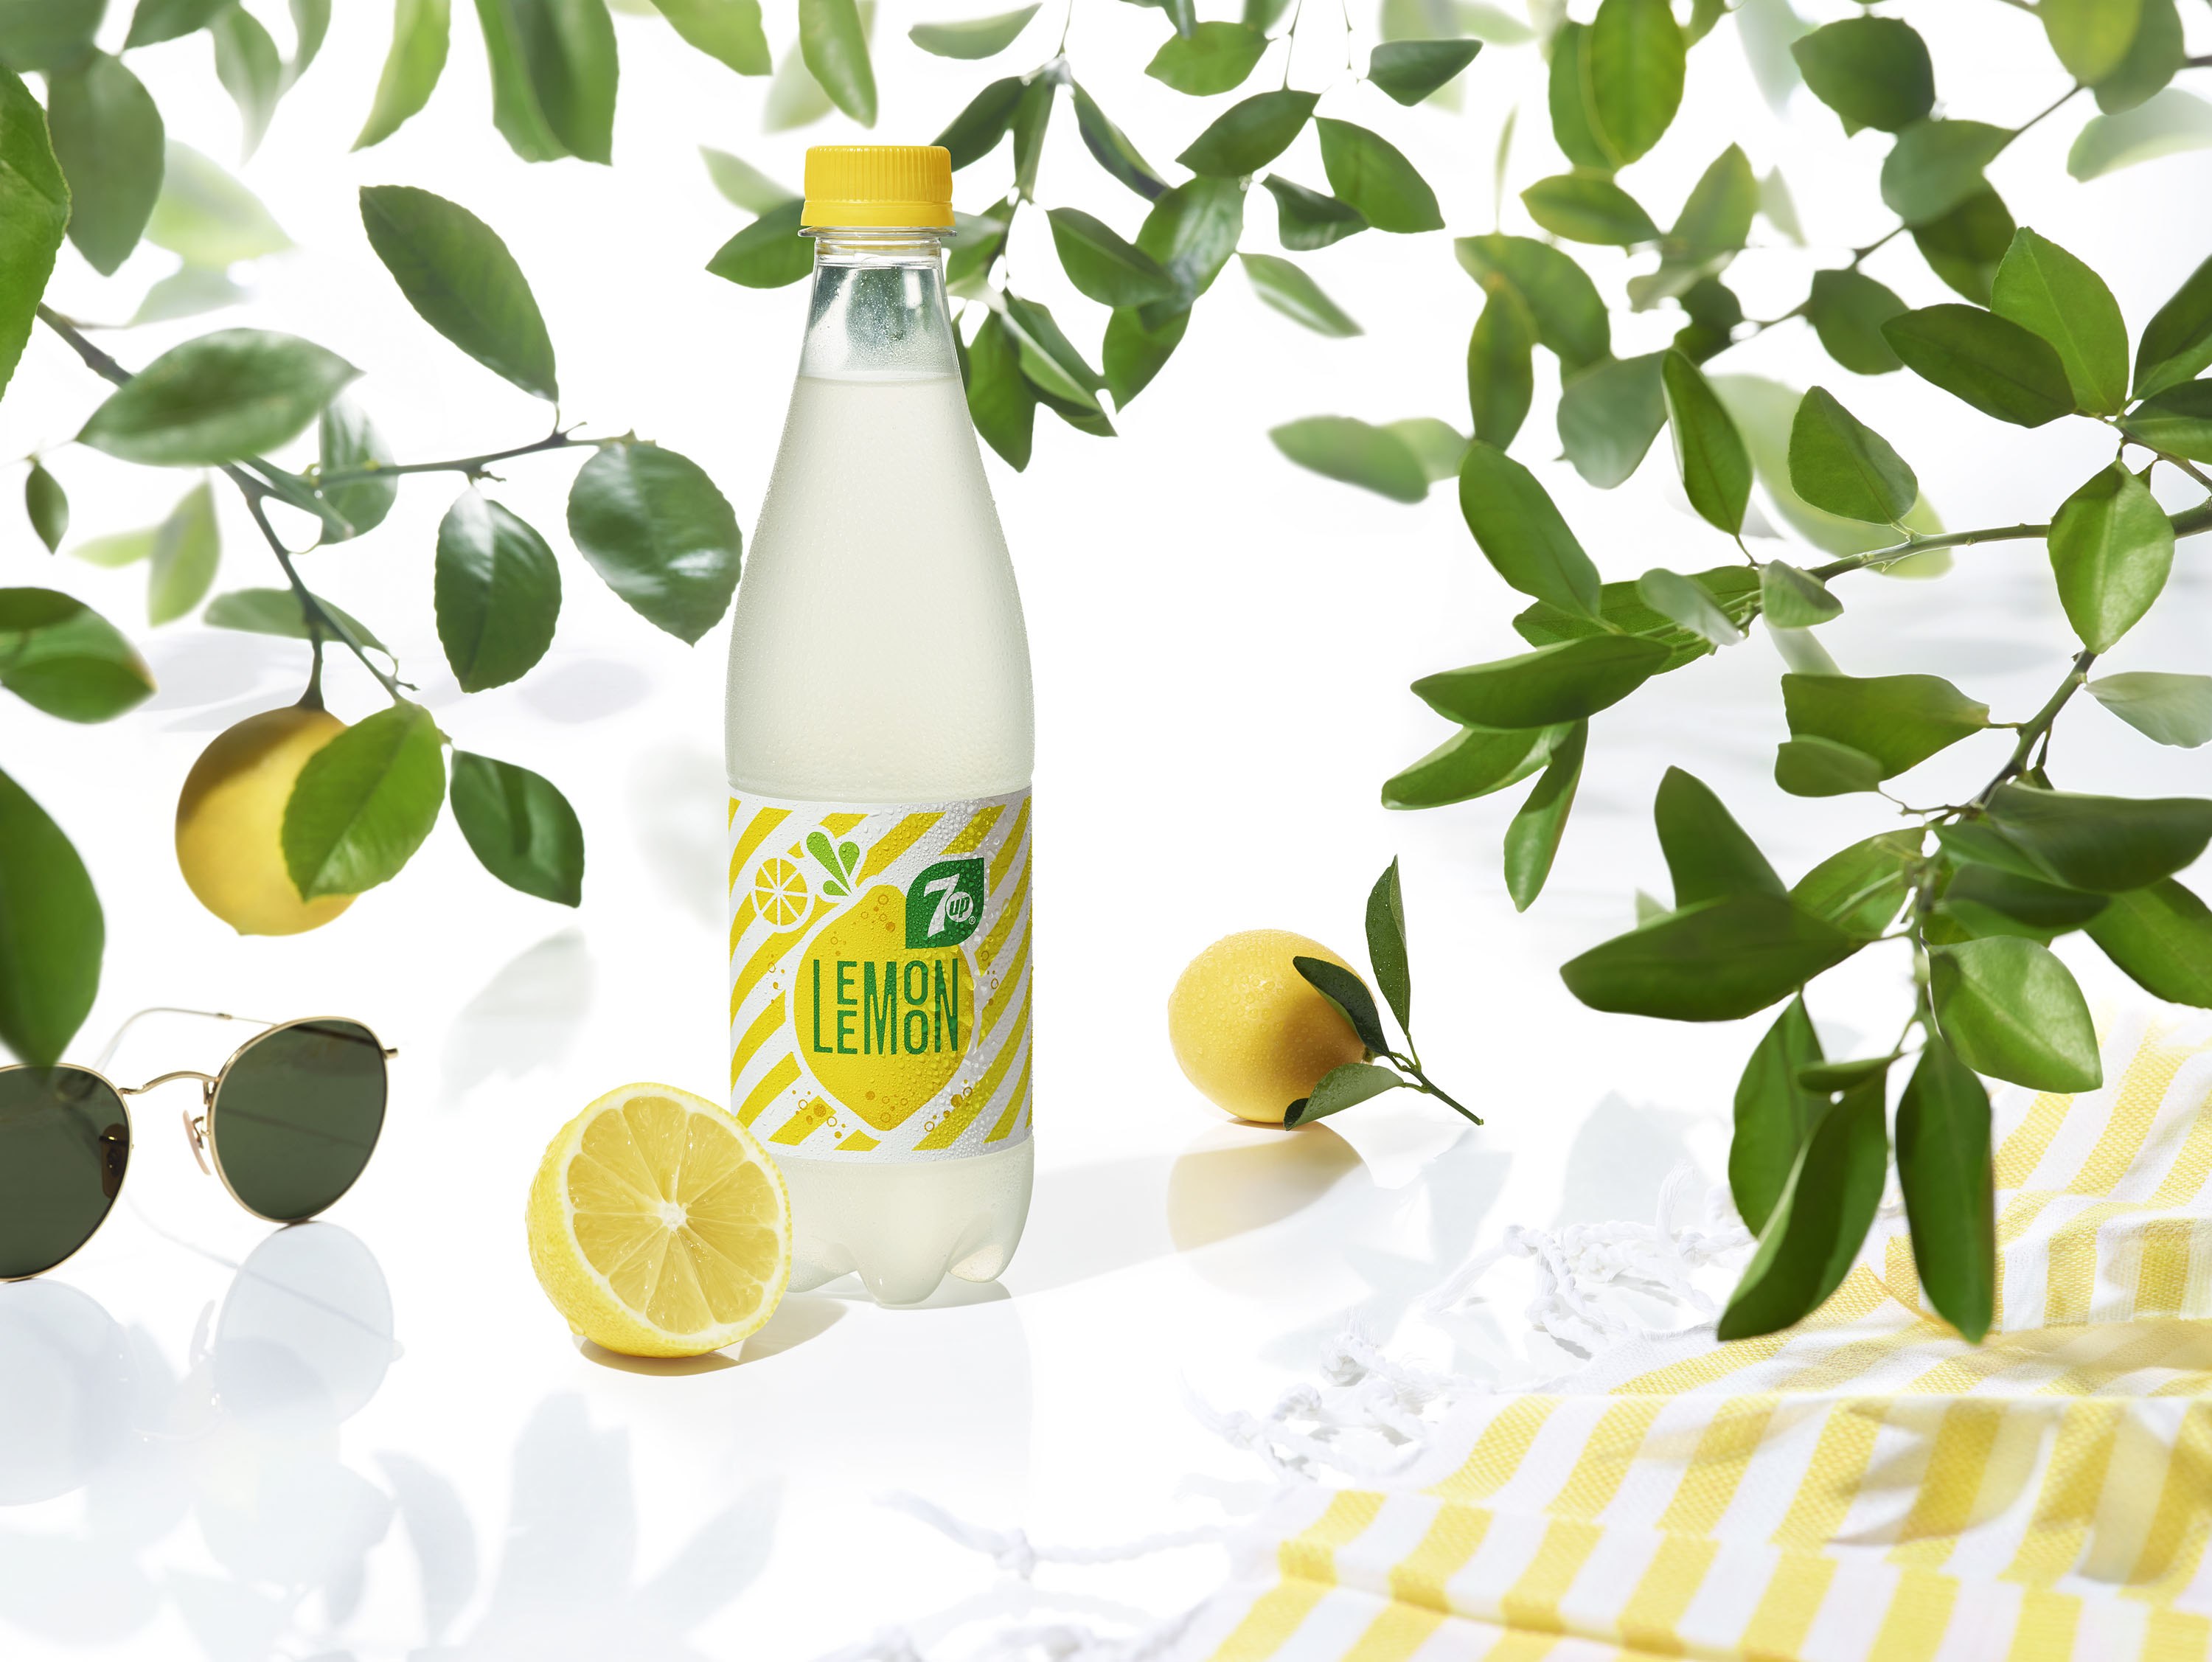 Лимон напиток газированный. 7ап лимон. Напиток Lemon лимонад. Лимонный Севен ап. 7up Lemon Lemon персикофф.